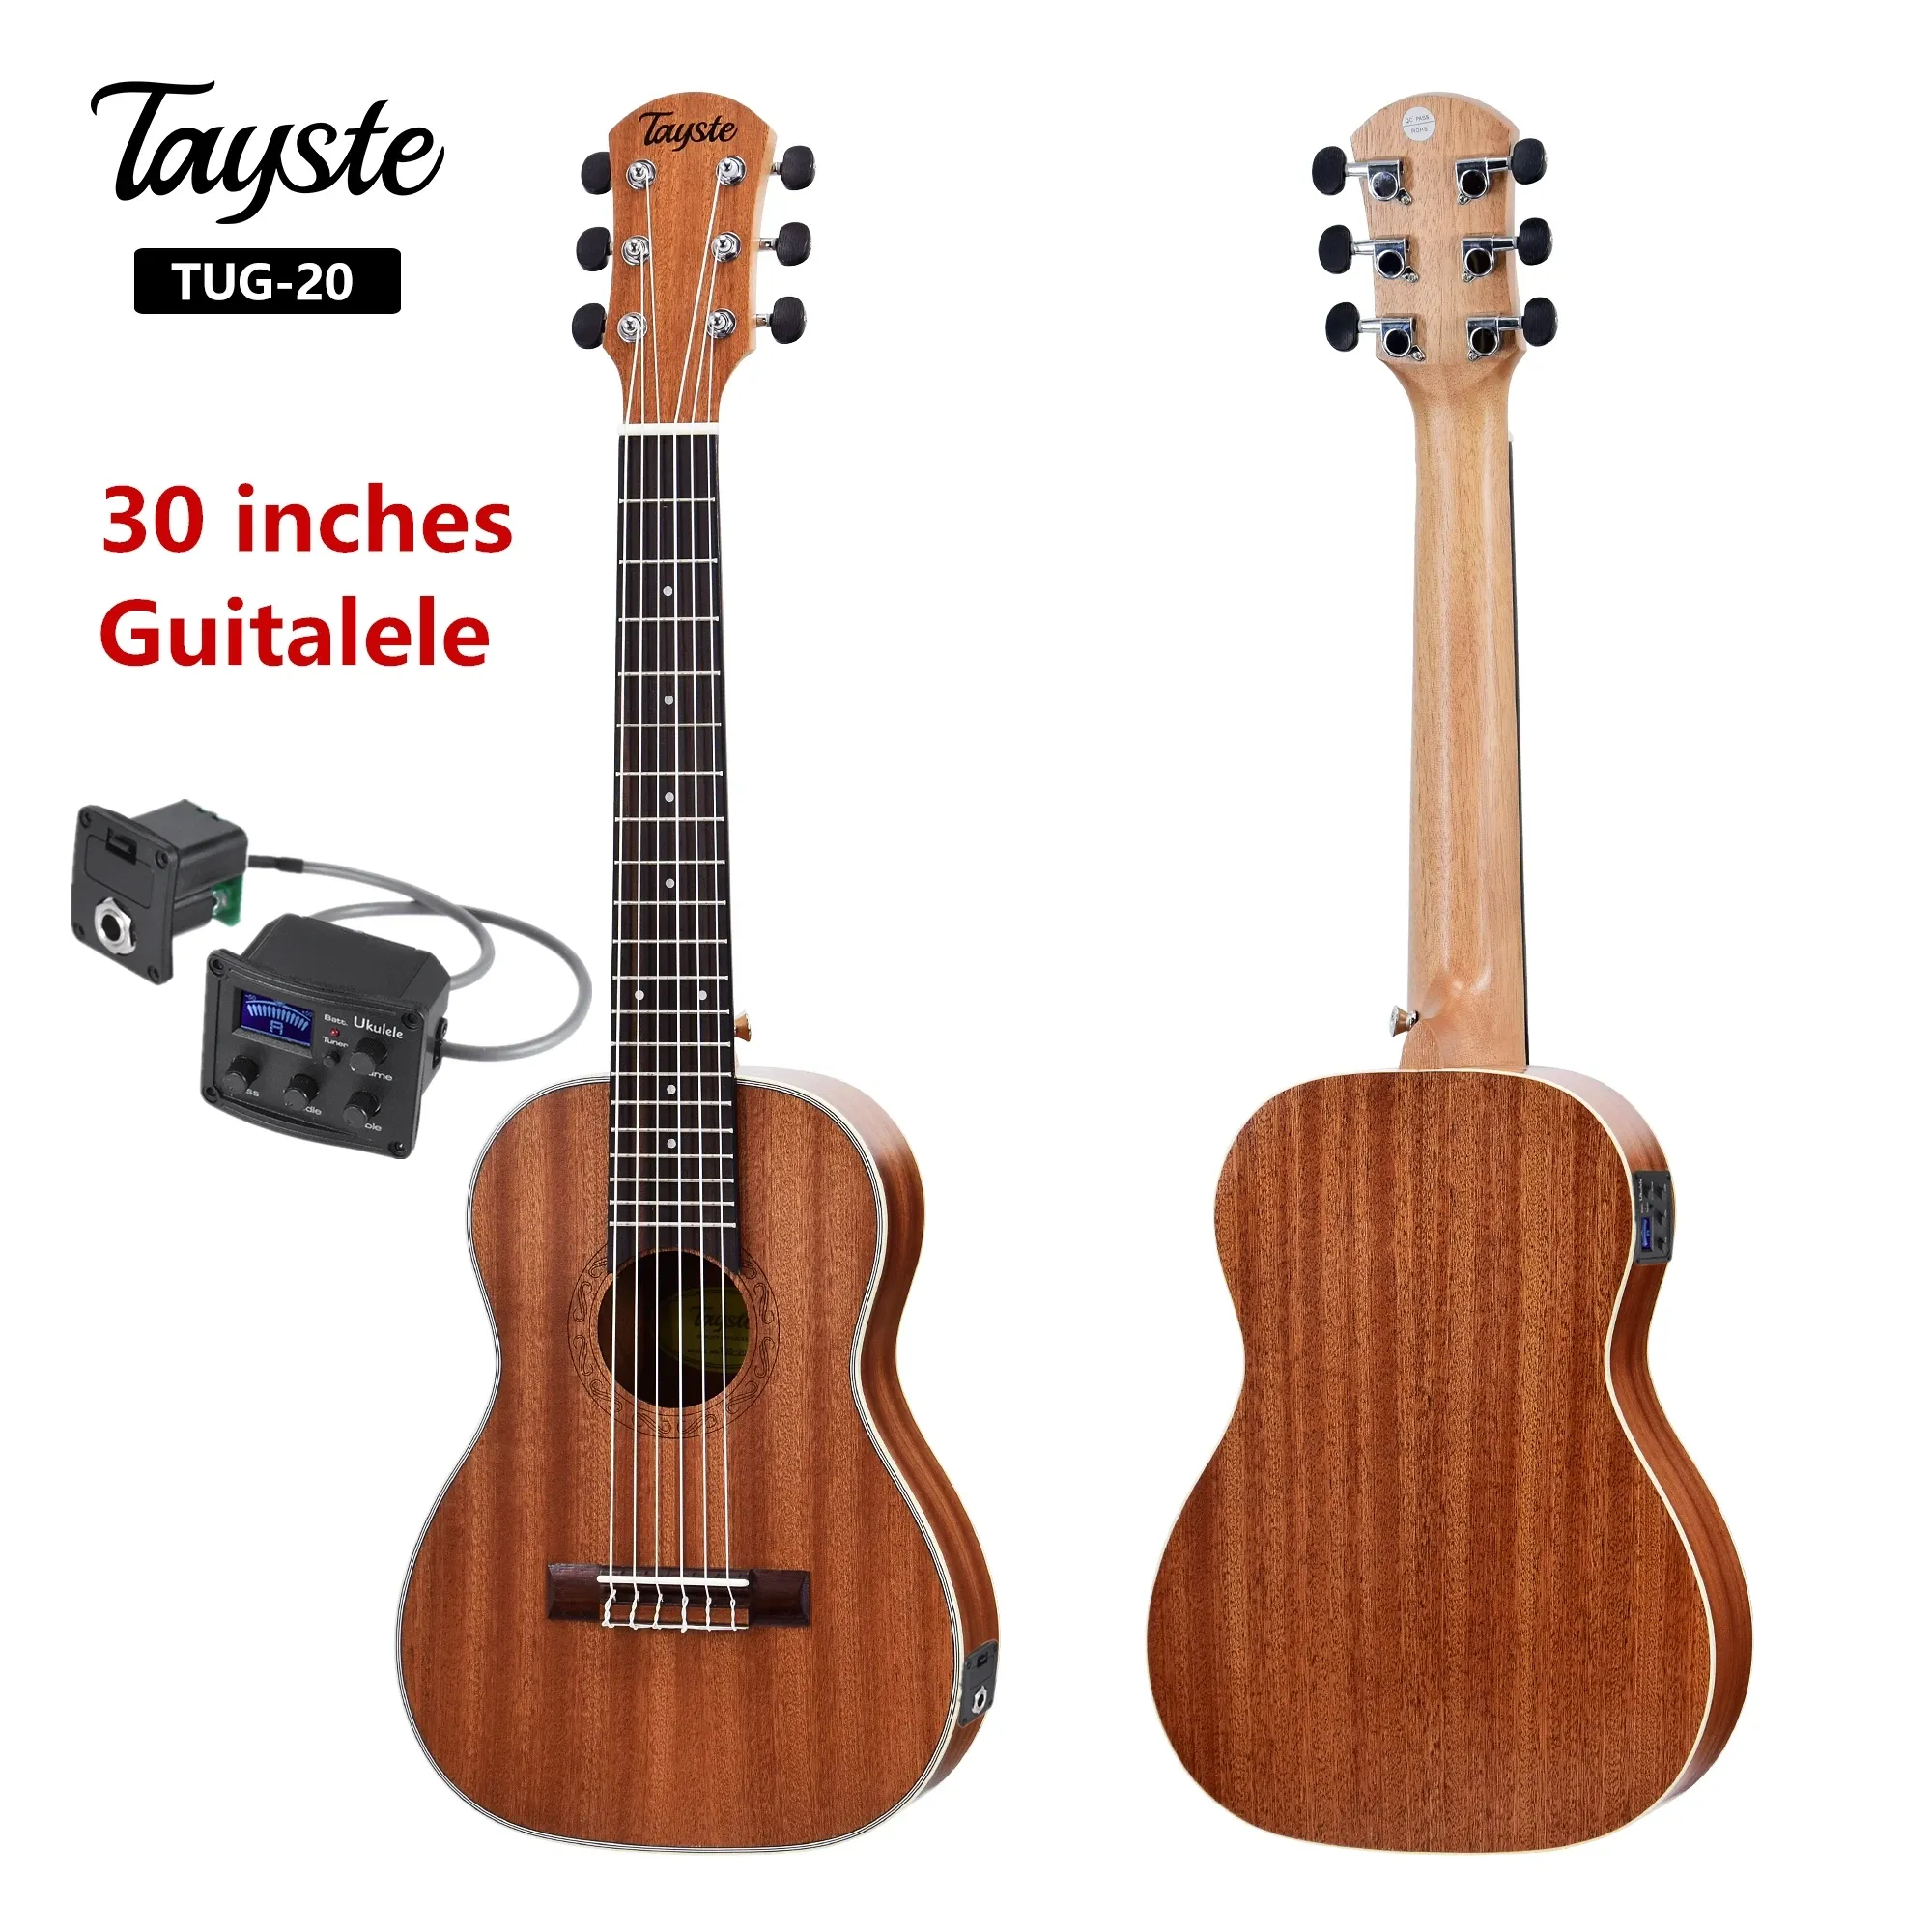 Guitare Guitalele Guilele 30 pouces Sapele Mini guitare électrique baryton guitares acoustiques 6 cordes ukulélé Pick up guitare de voyage